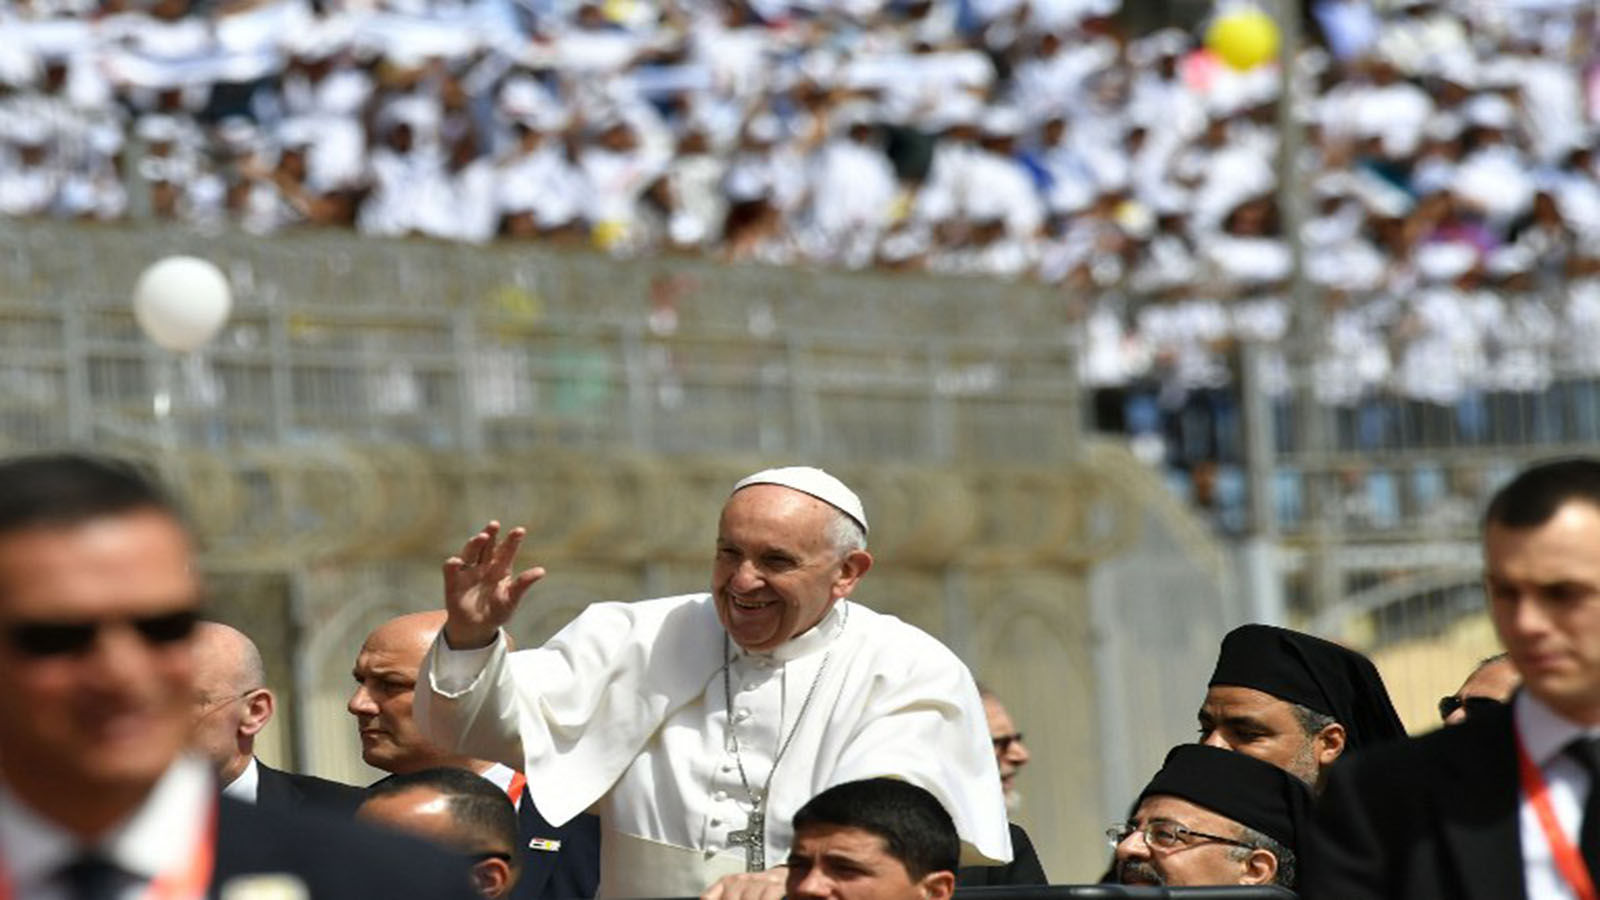 مصر:عظة البابا فرنسيس في استاد عسكري